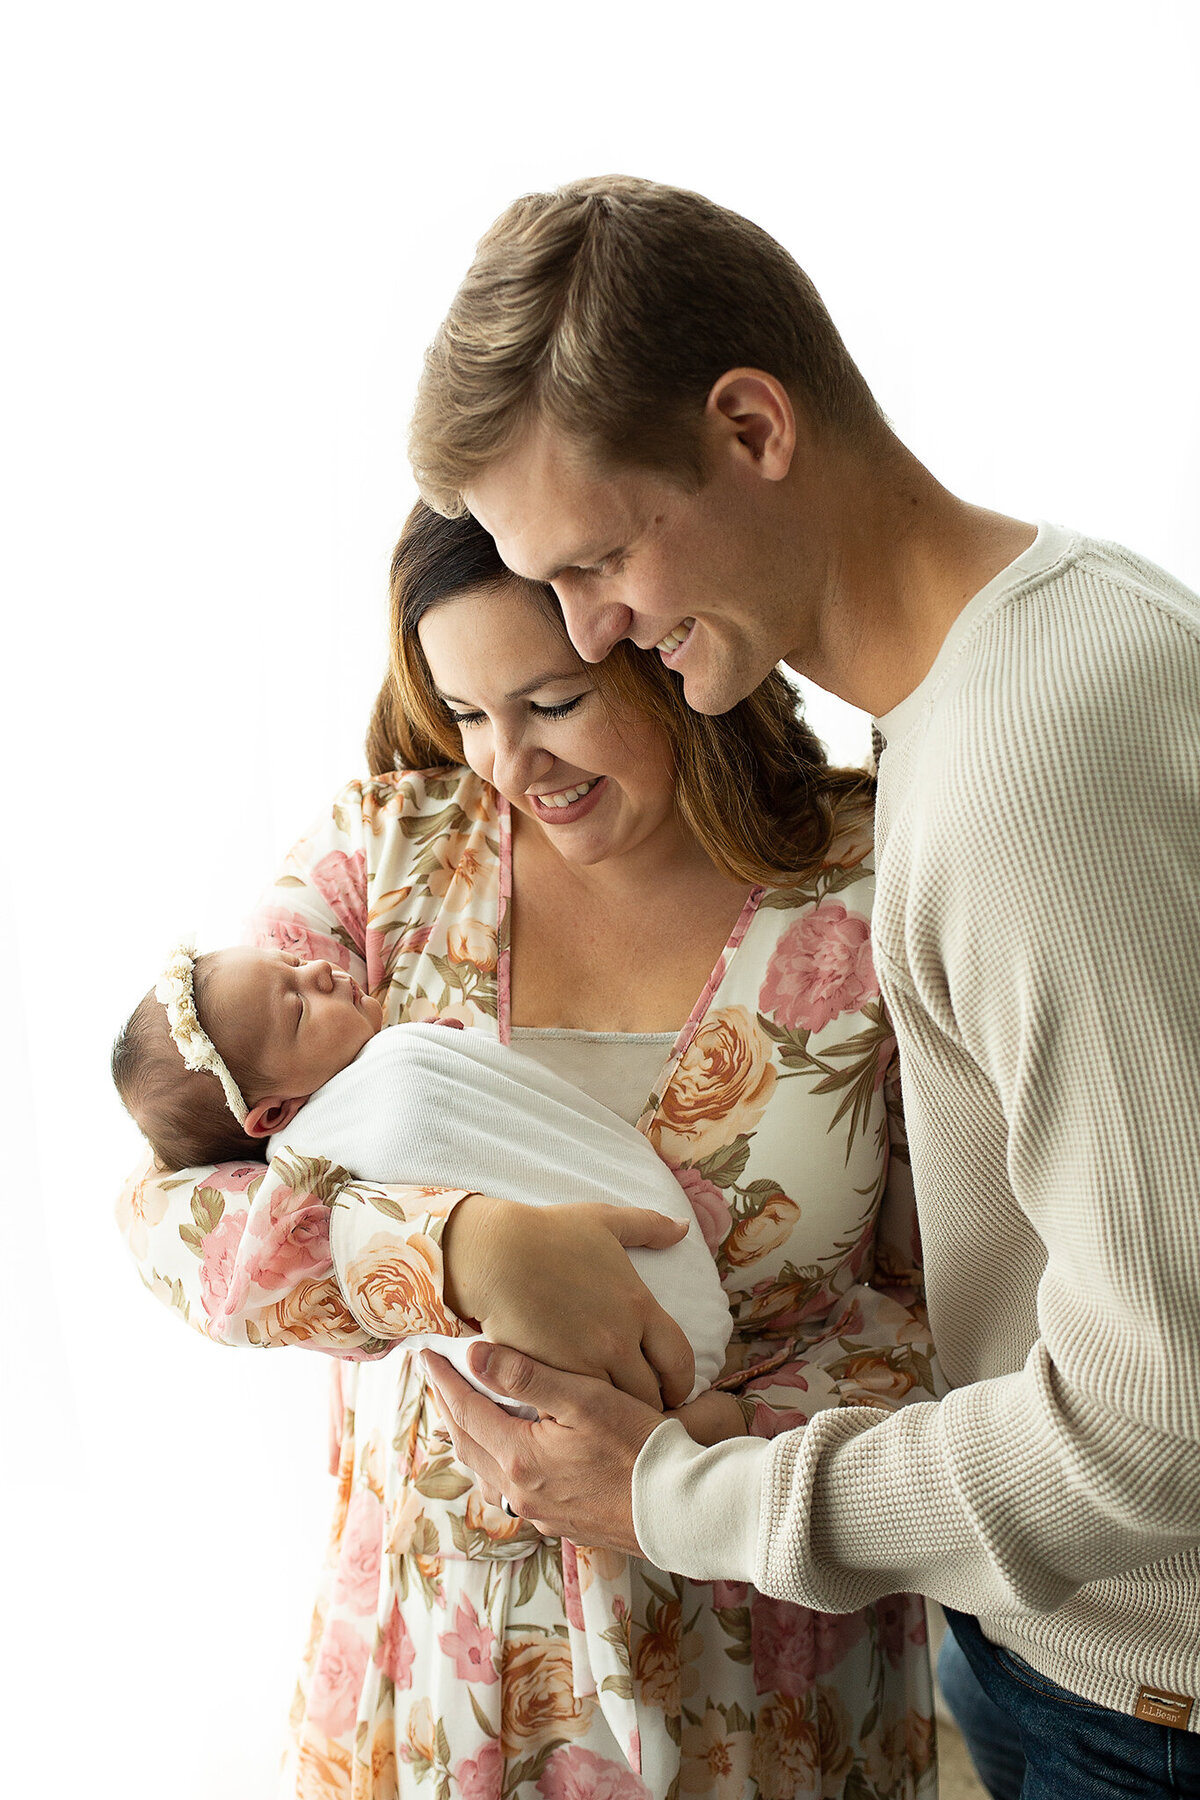 columbus-ohio-new-parents-holding-baby-girl-swaddled-in-white-amanda-estep-photography